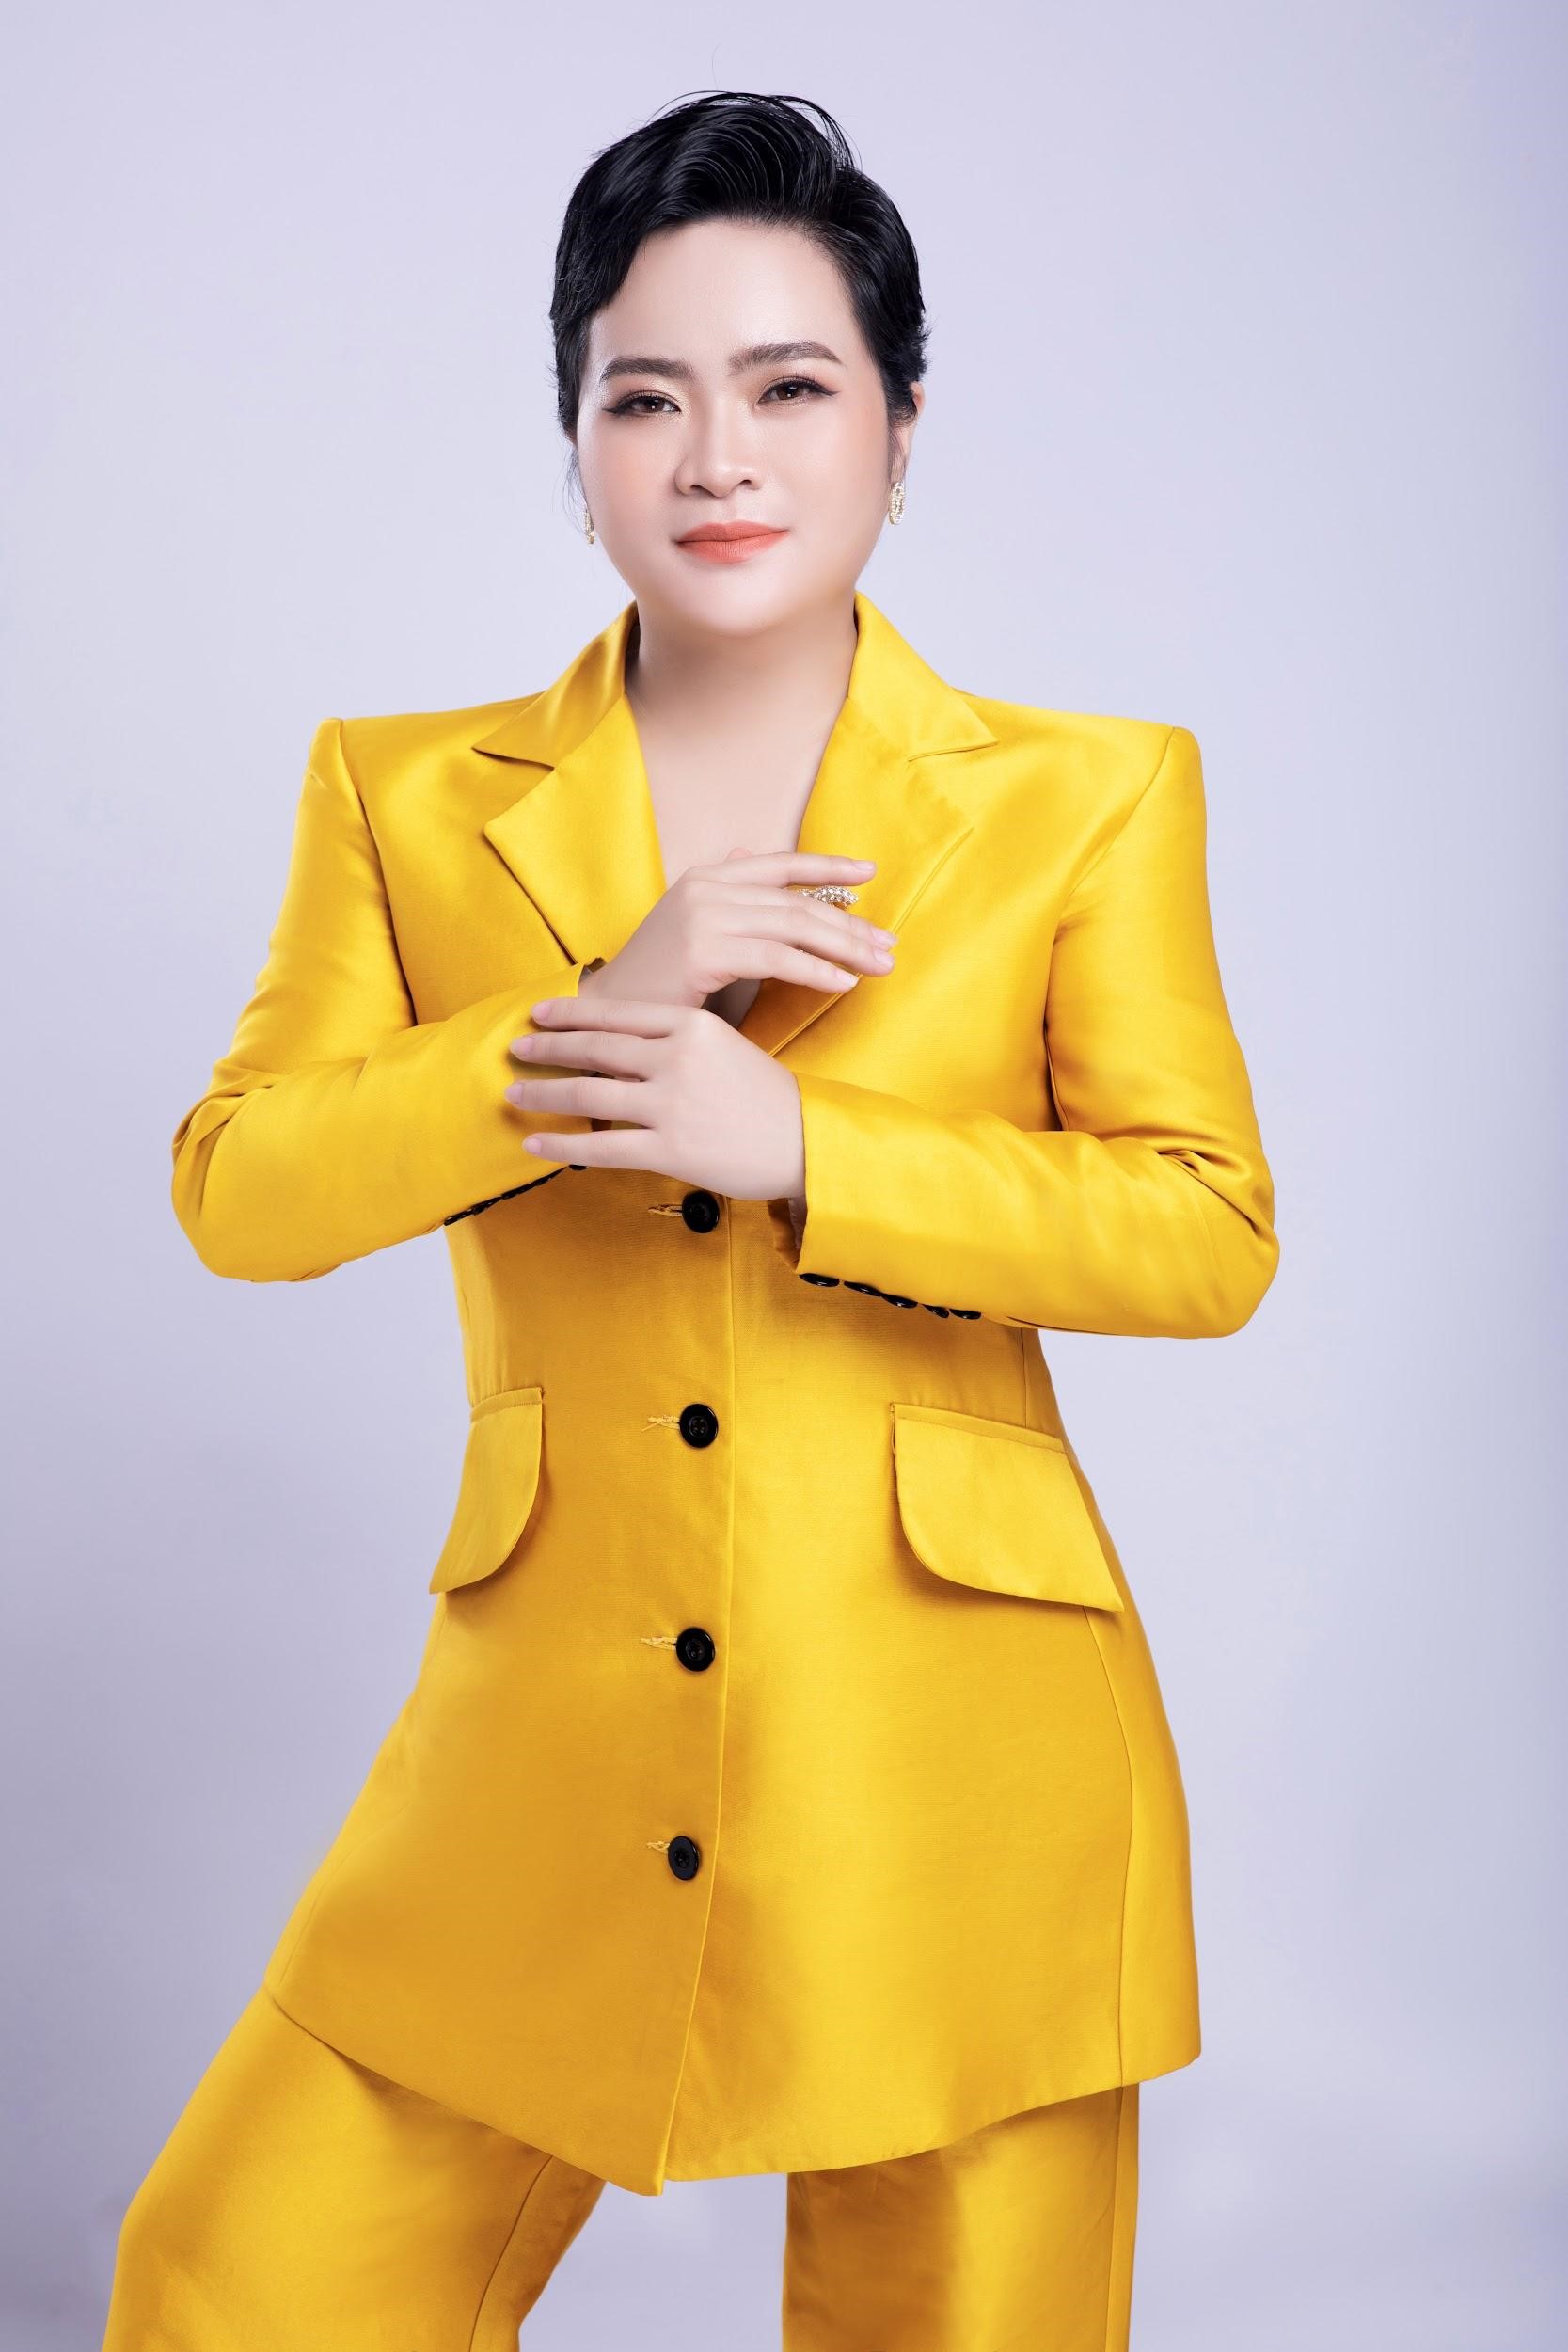 Chu Thanh Hà - Phụ nữ hiện đại tự chủ tài chính, làm chủ cuộc đời